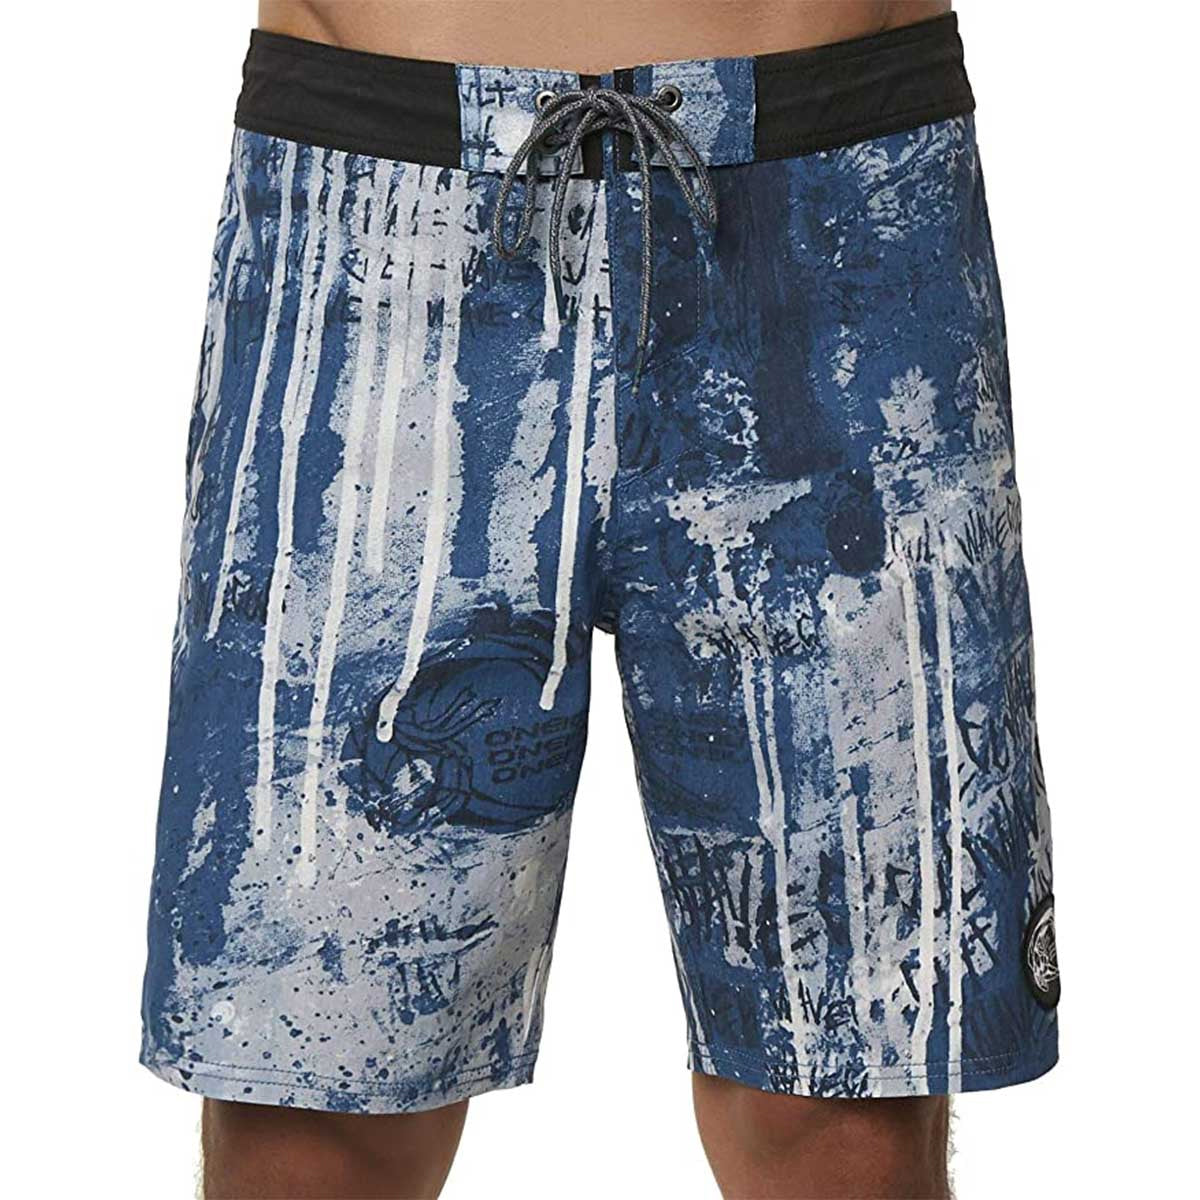 O'Neill Wavecult Cruzer Men's Boardshort Shorts - Blue